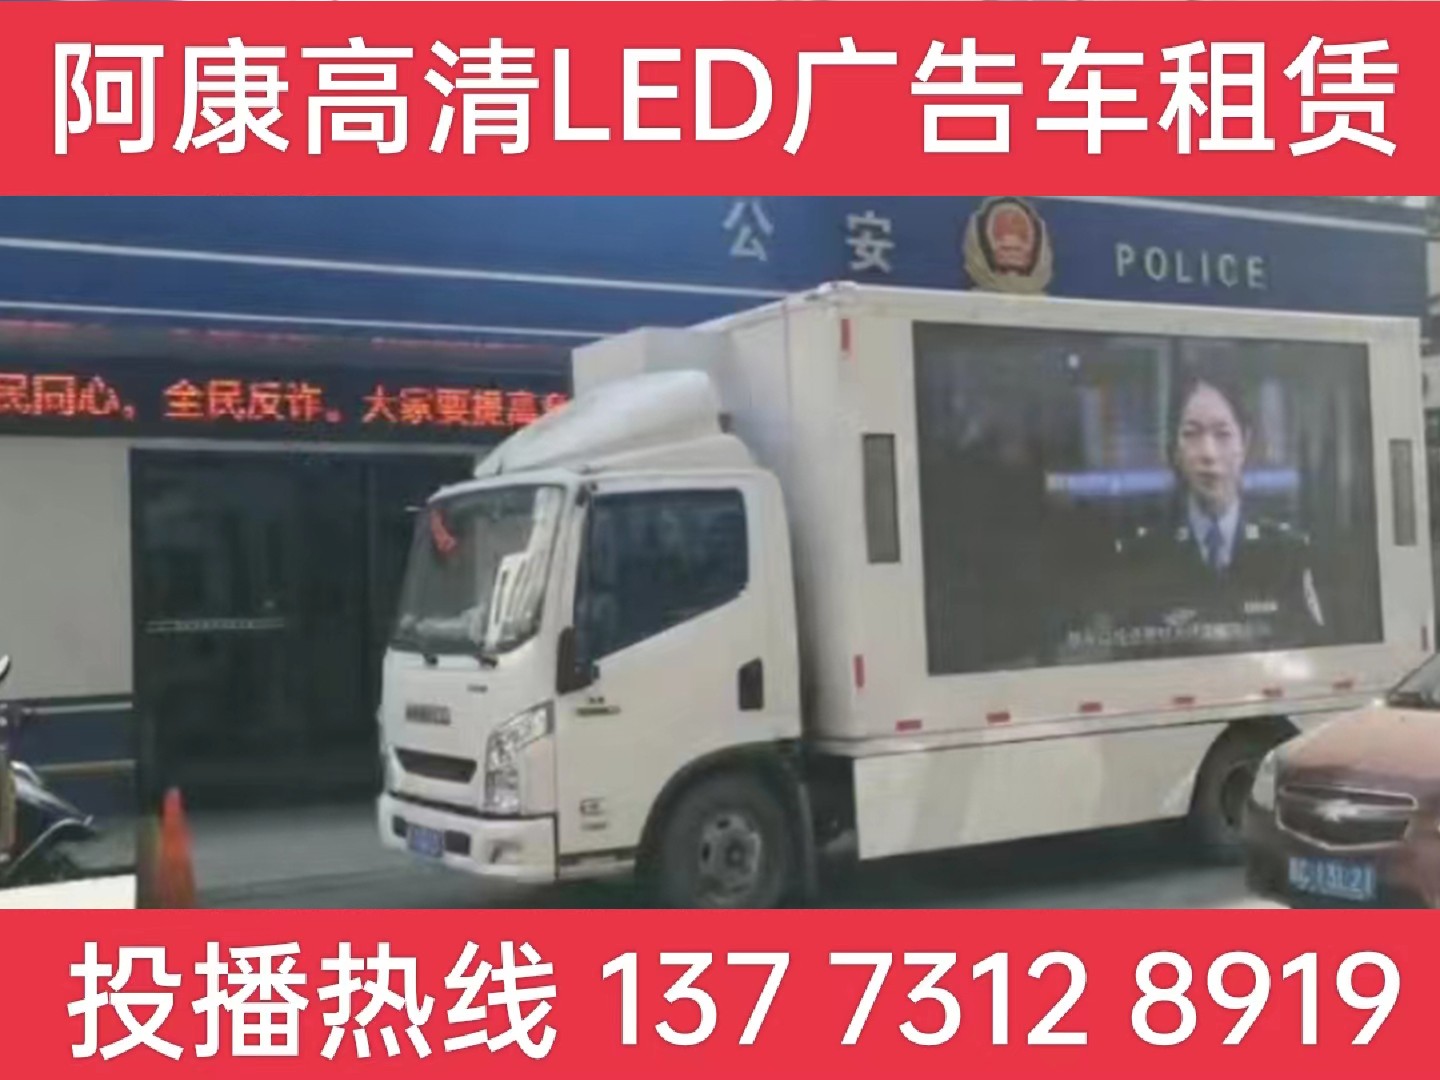 淮安LED广告车租赁-反诈宣传